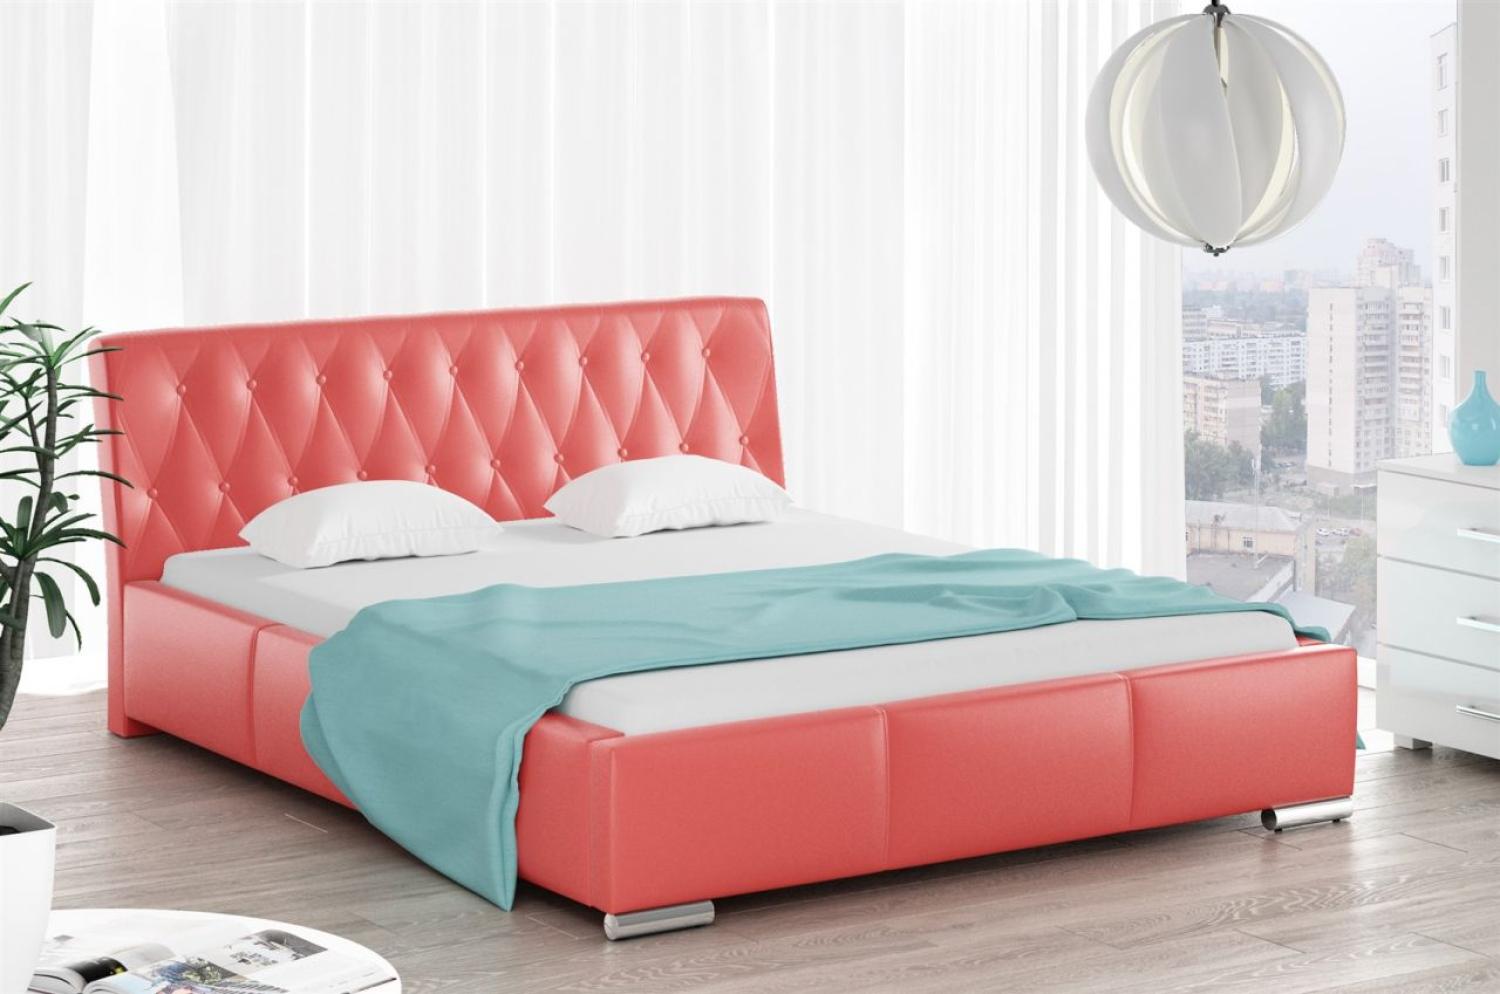 Polsterbett Bett Doppelbett THORE Kunstleder Rot 180x200cm Bild 1